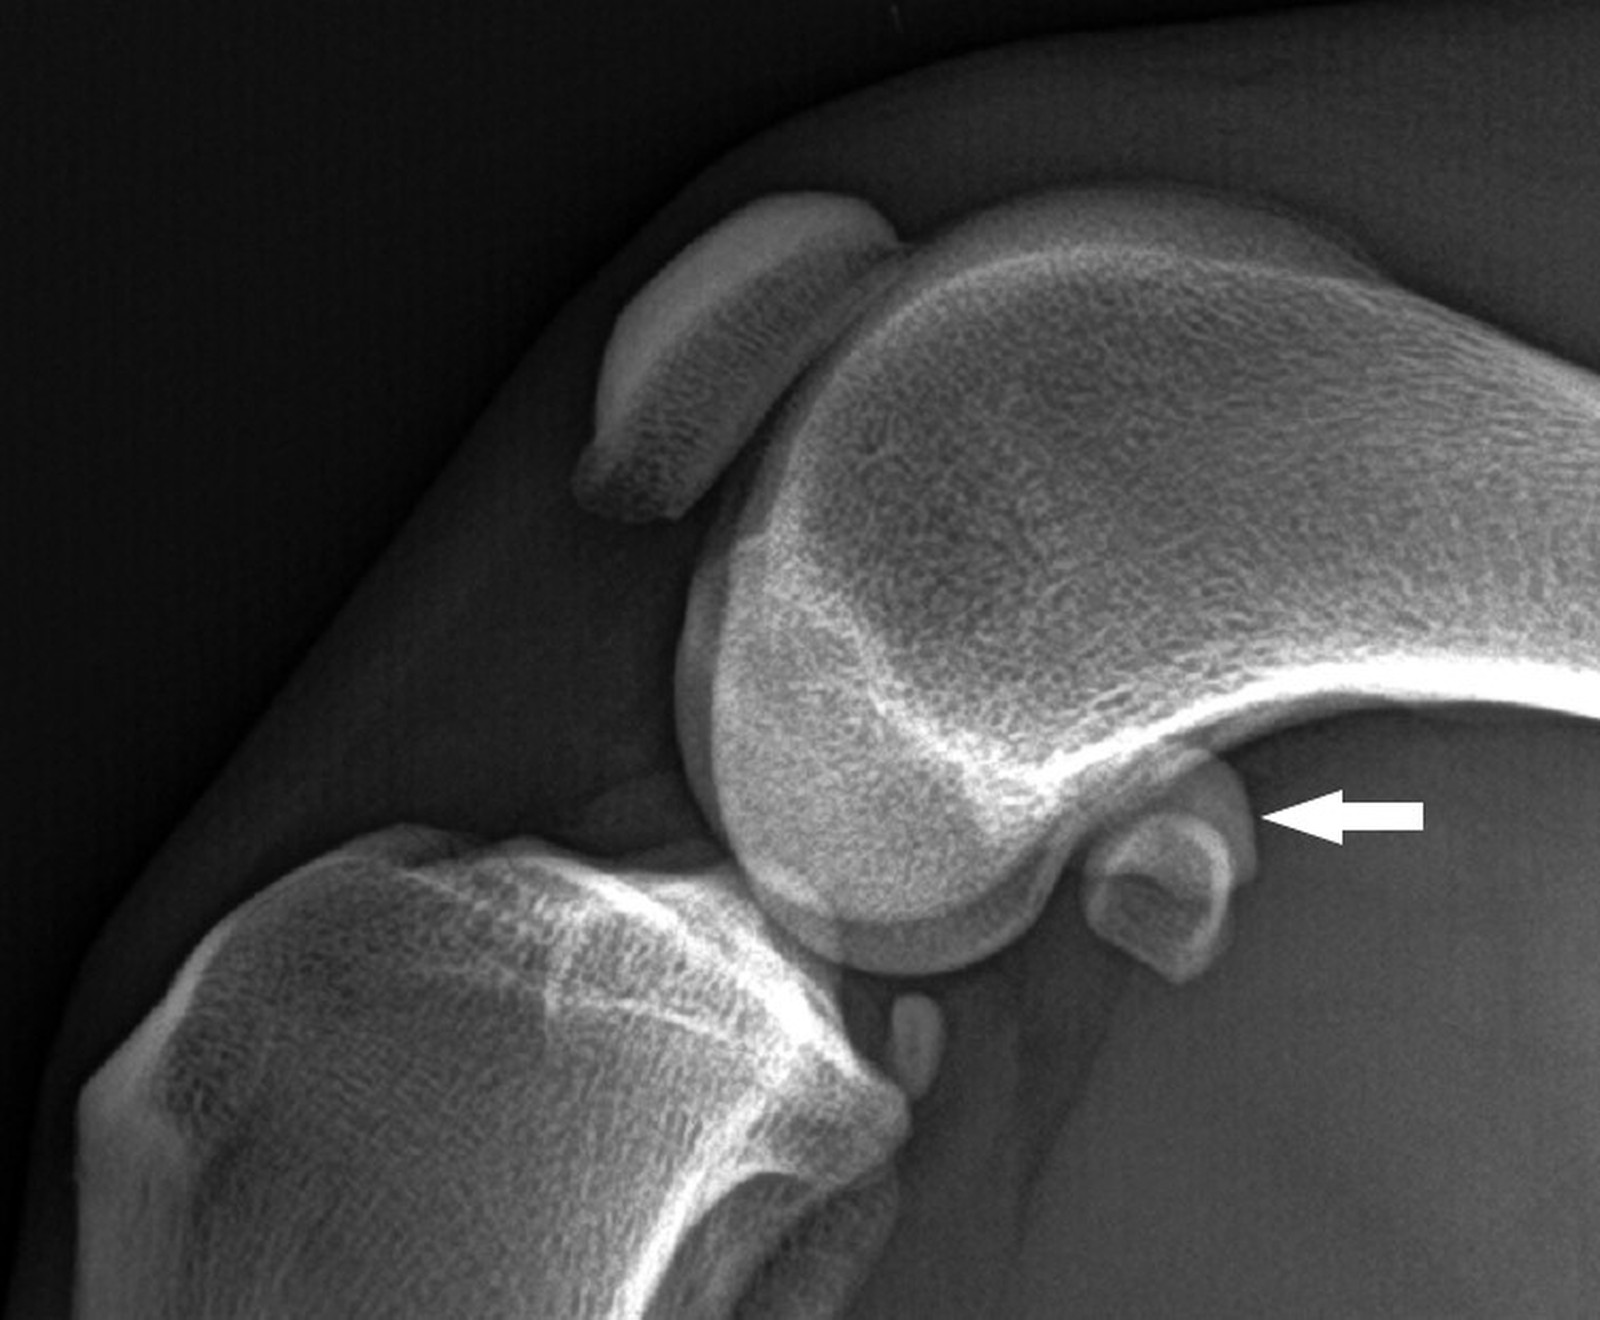 Die proximale Kontur der Fabella ist klar abgrenzbar, die Knochenstruktur ist homogen (Pfeil).